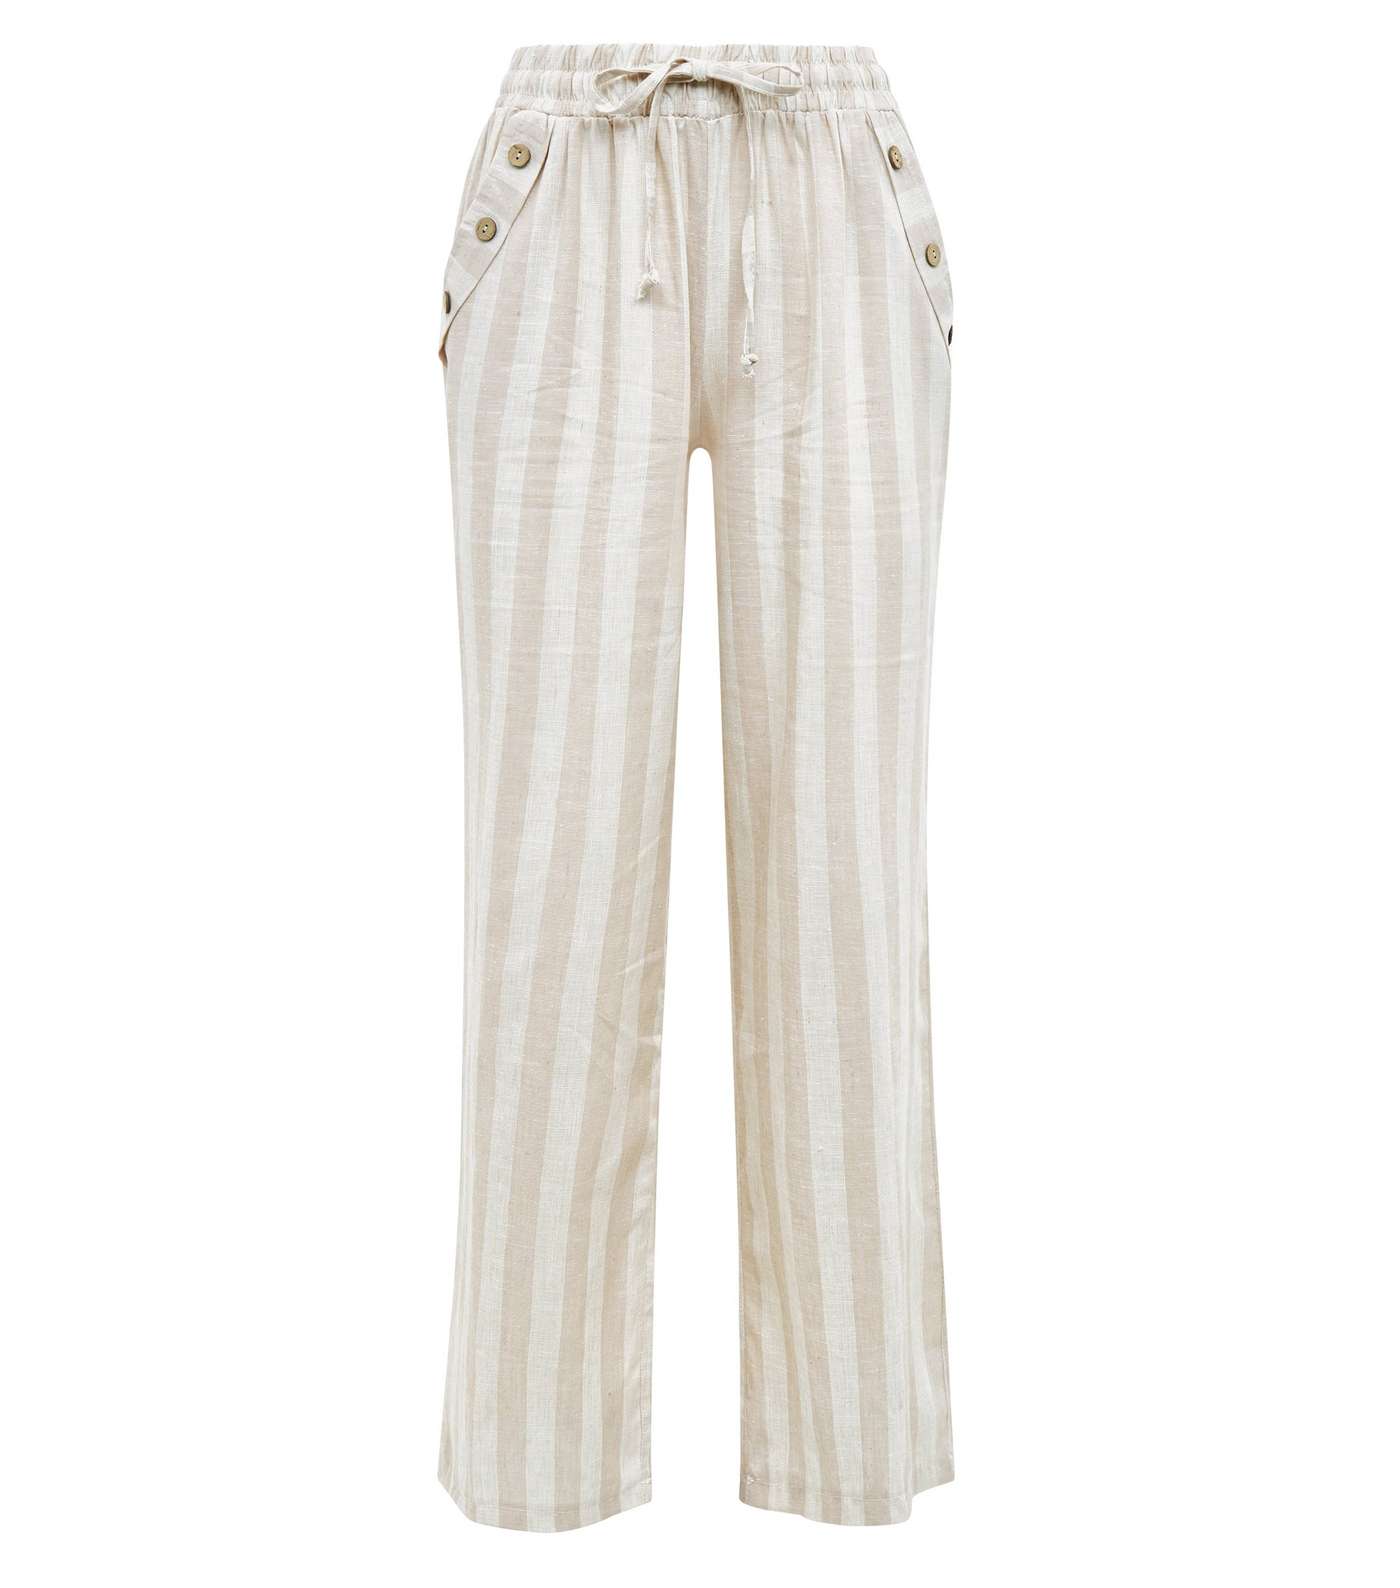 Lulua London Off White Stripe Linen-Look Trousers  Image 4